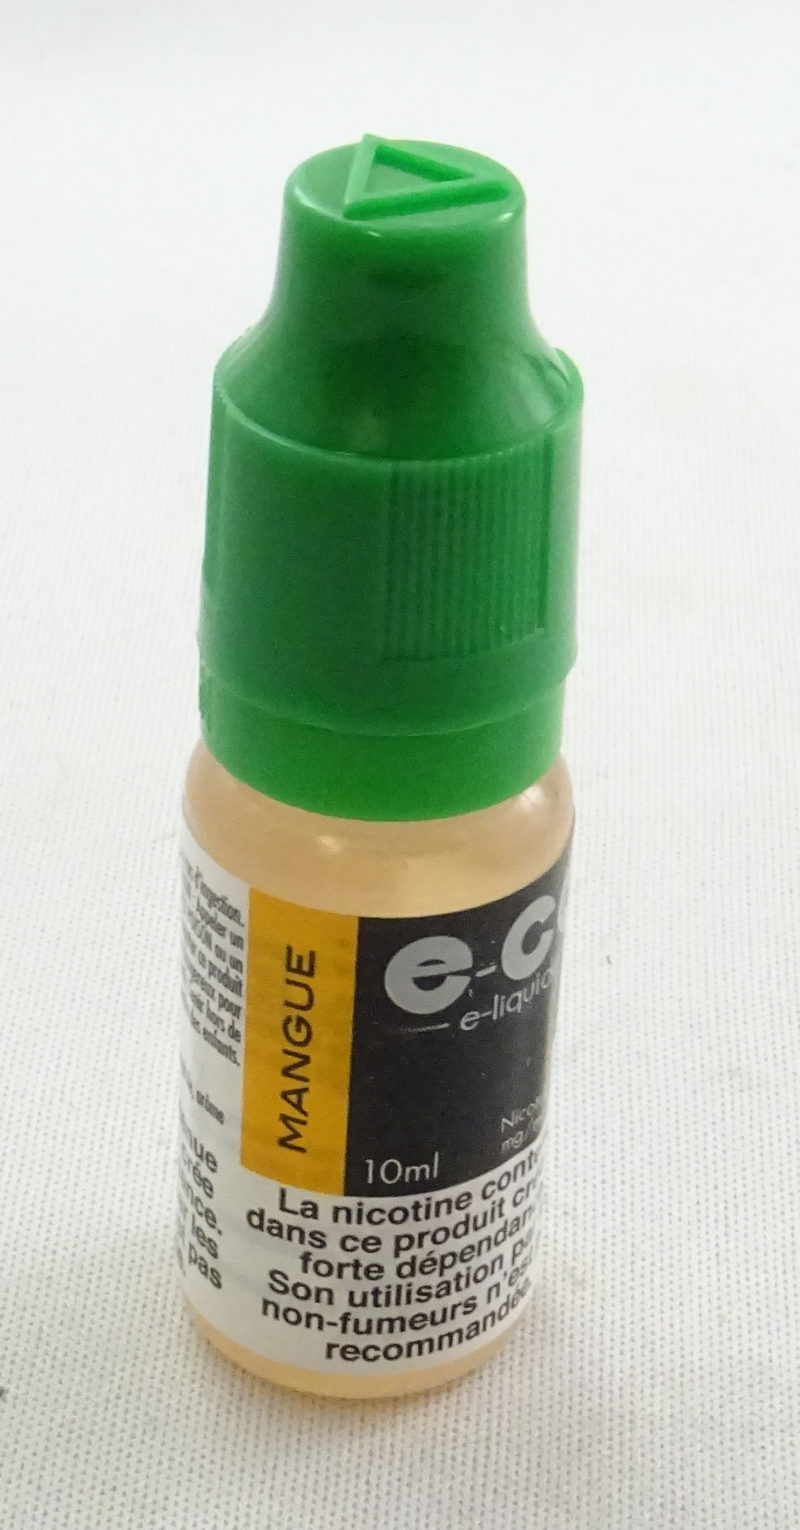 E-CG e-liquide mangue 0mg.